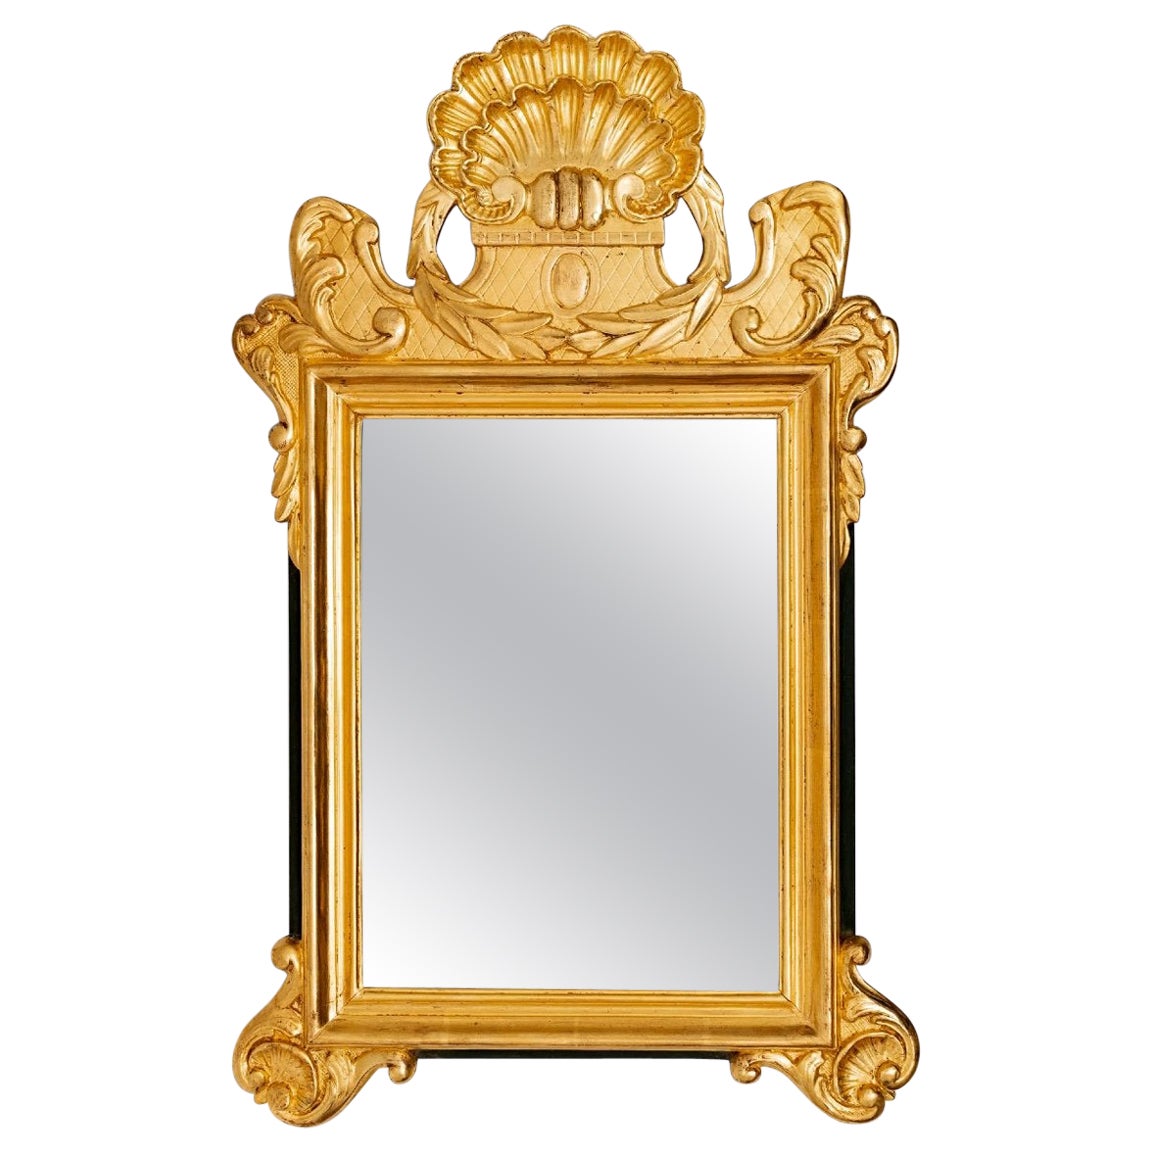 Miroir coquillage - Bois doré - Glace mercurée - Période : XVIIIe siècle